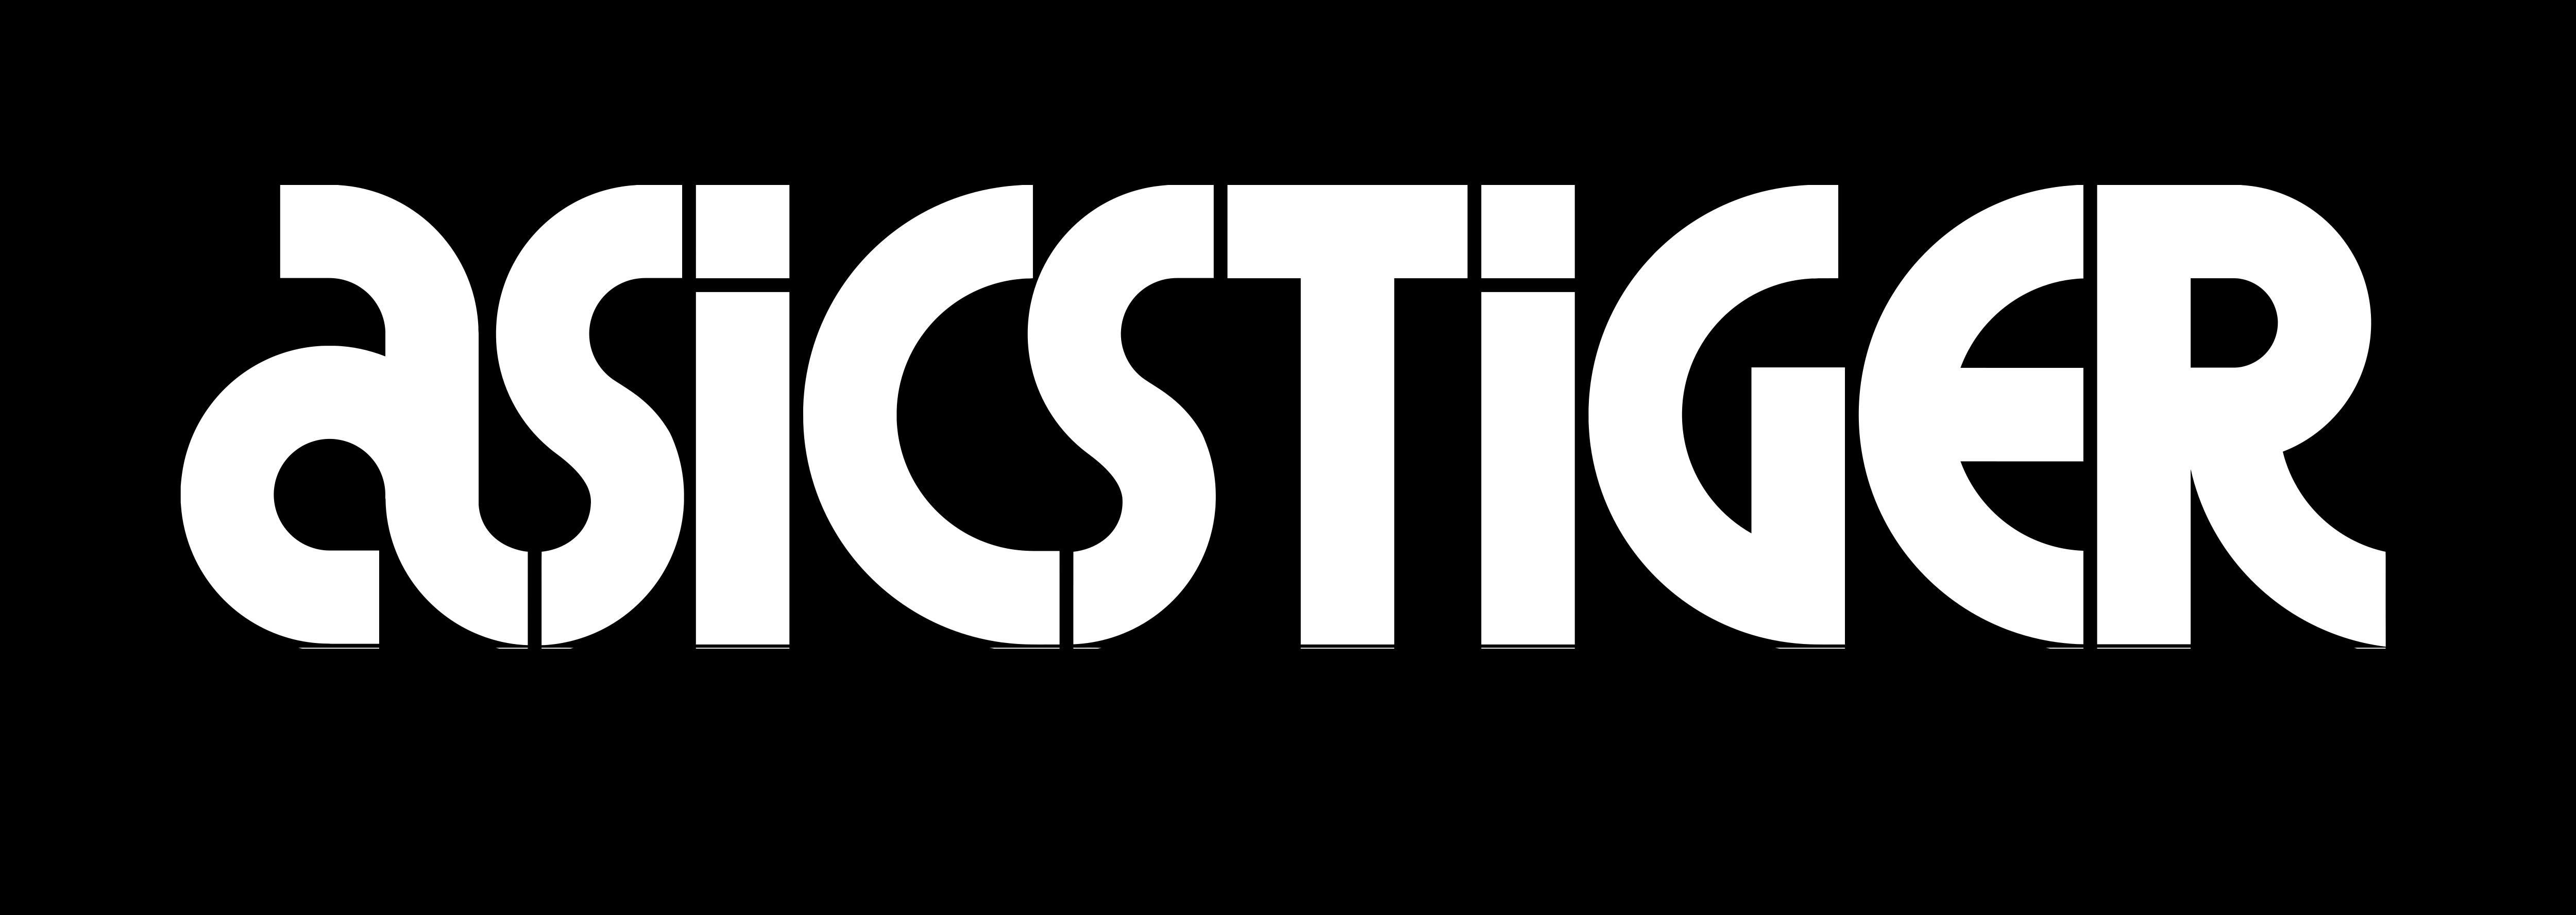 Asics Tiger – Logos Download